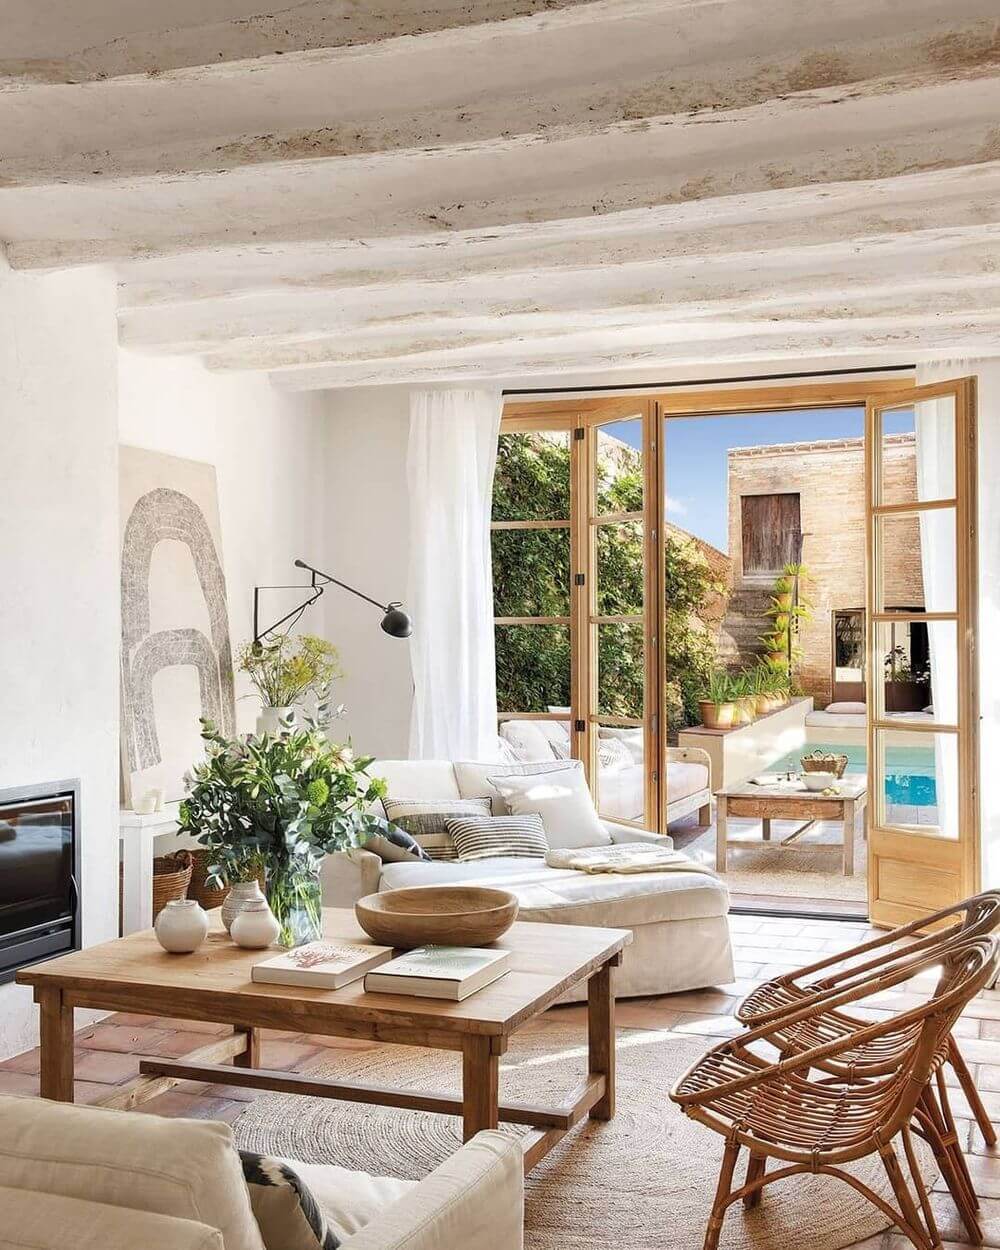 Mediterranean Style Interior Design